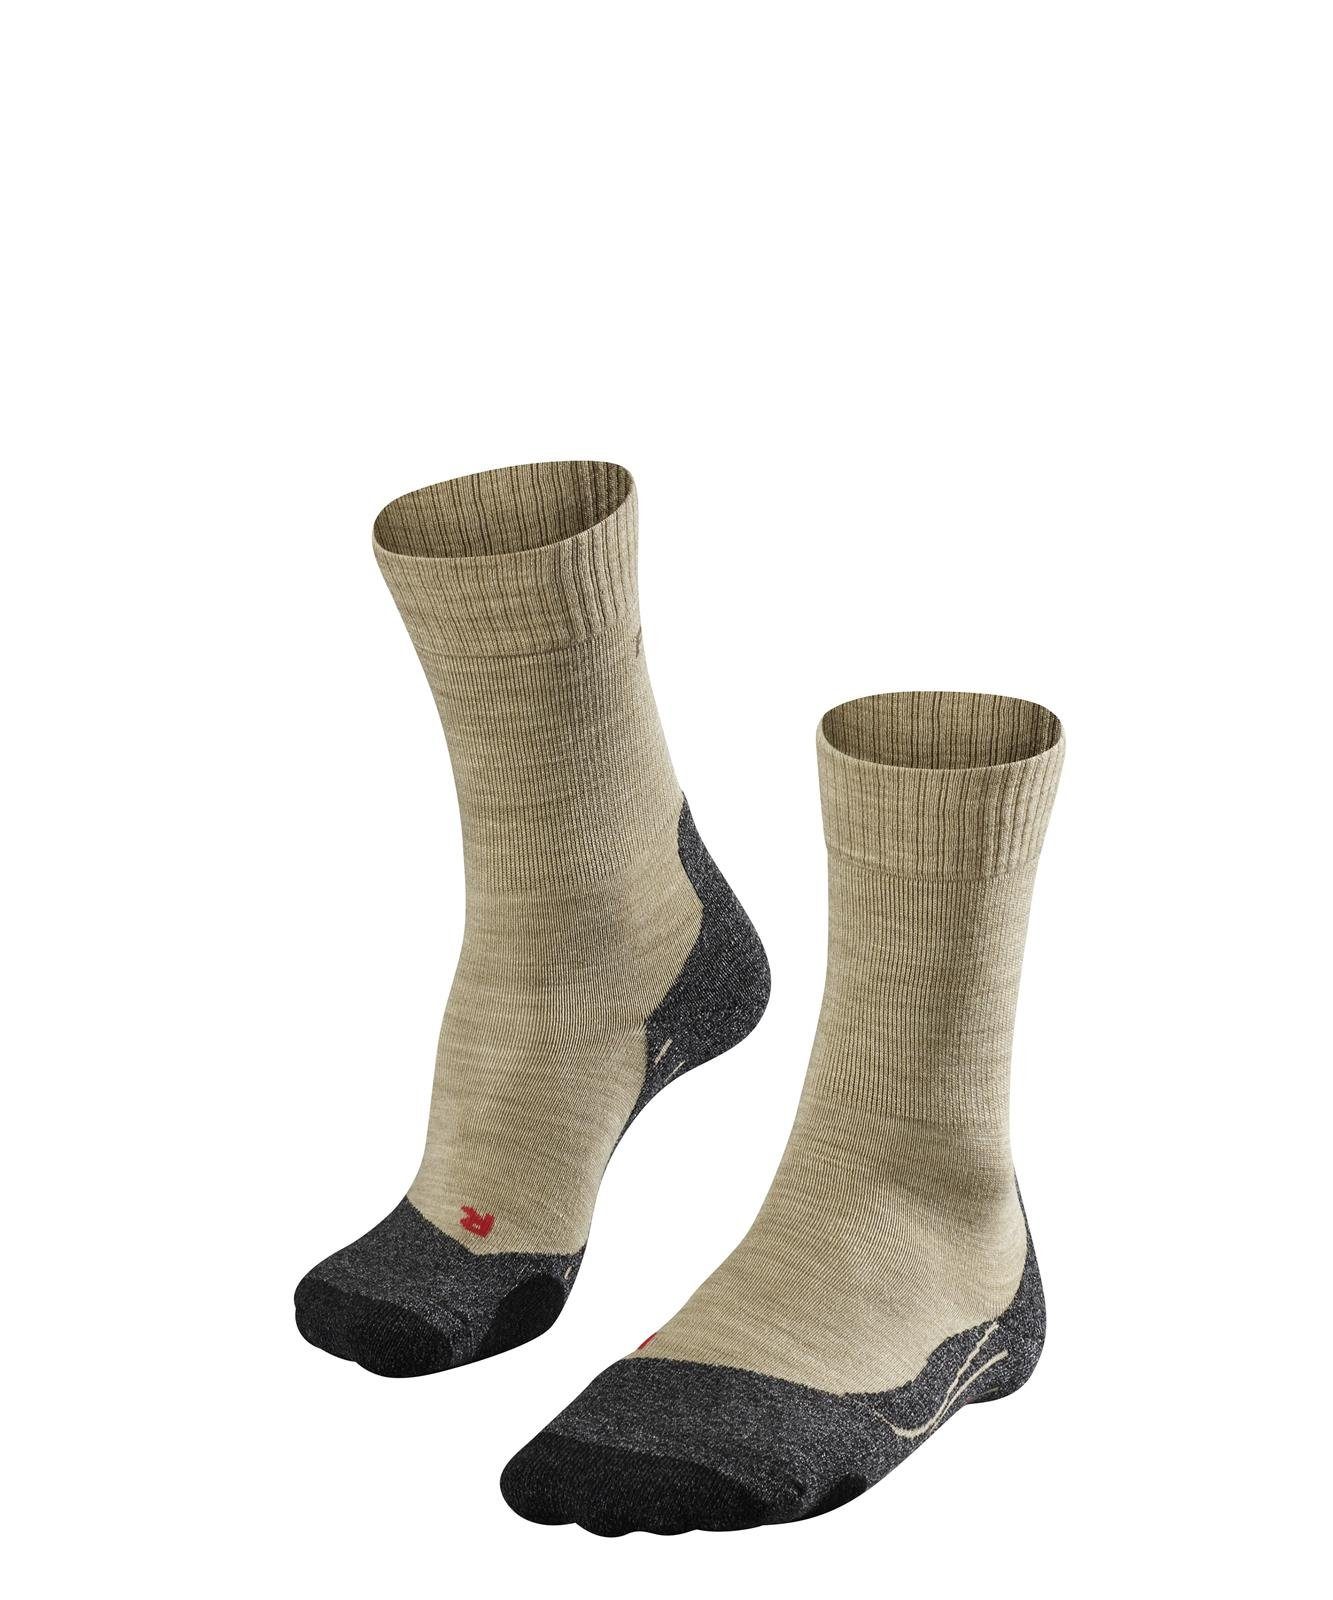 FALKE Sportsocken Herren TK2, Socken Socken (4100) - Trekking Sand Polsterung